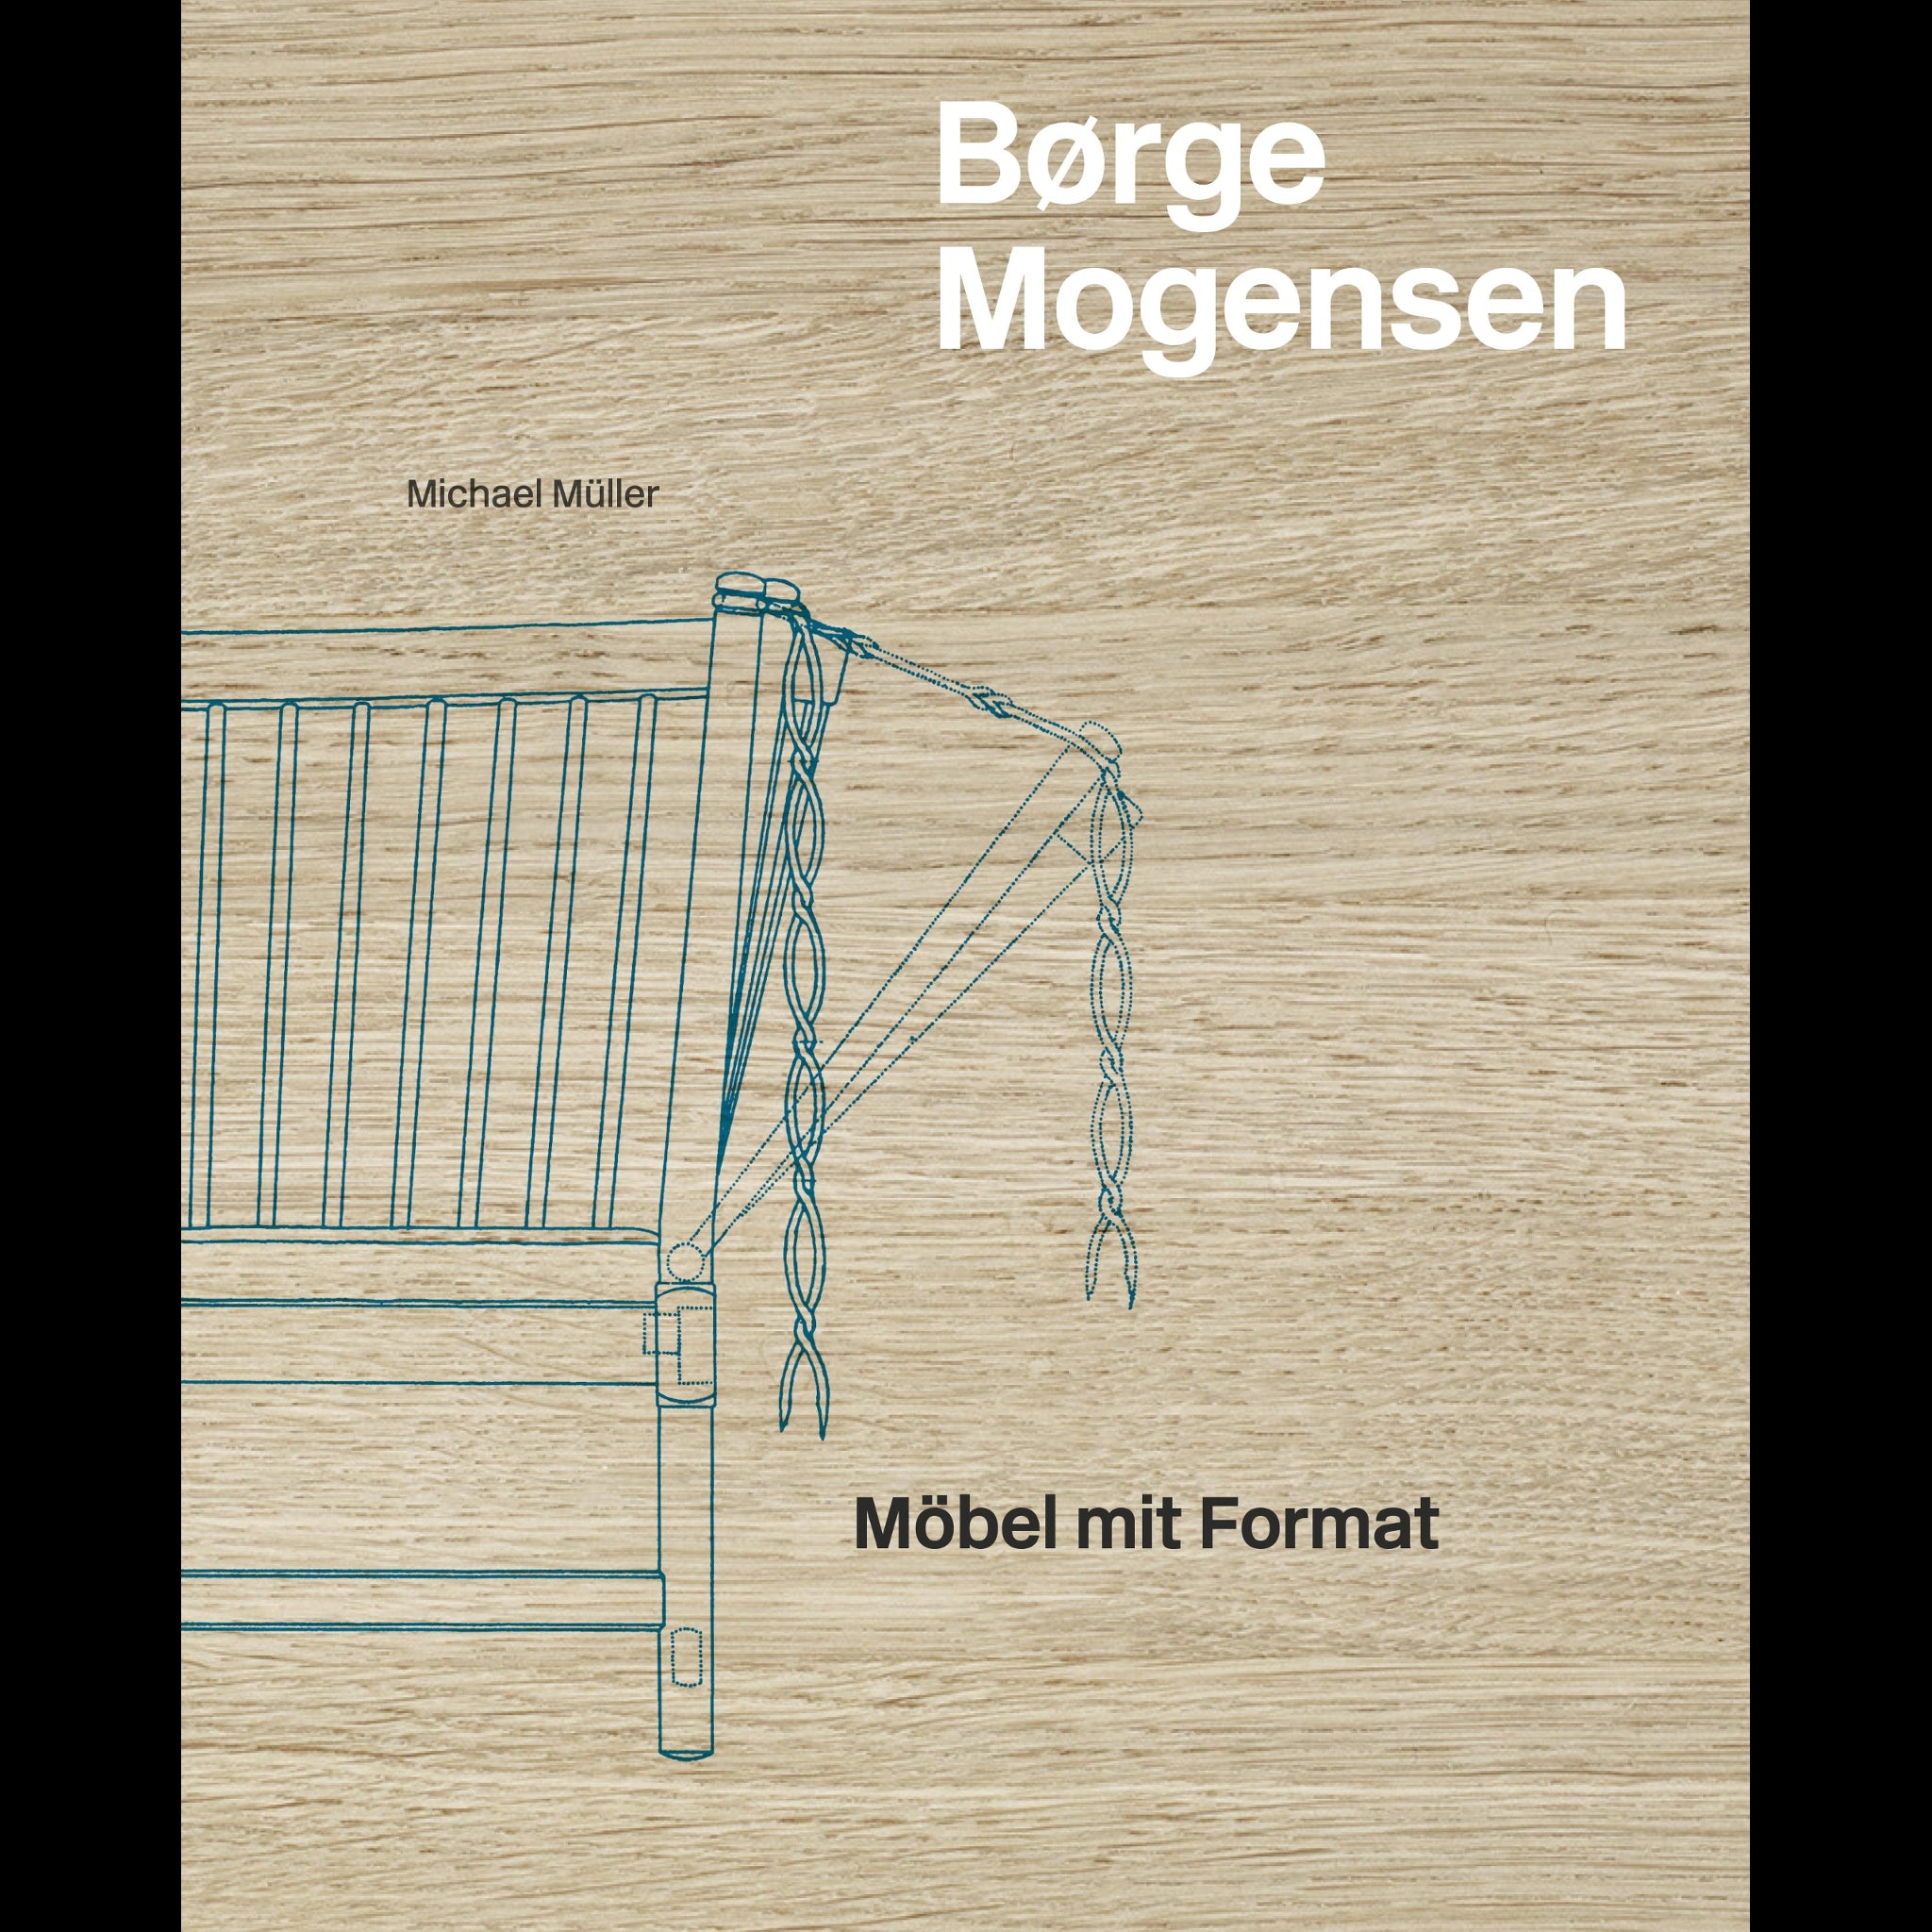 Børge Mogensen | Hatje Cantz Verlag